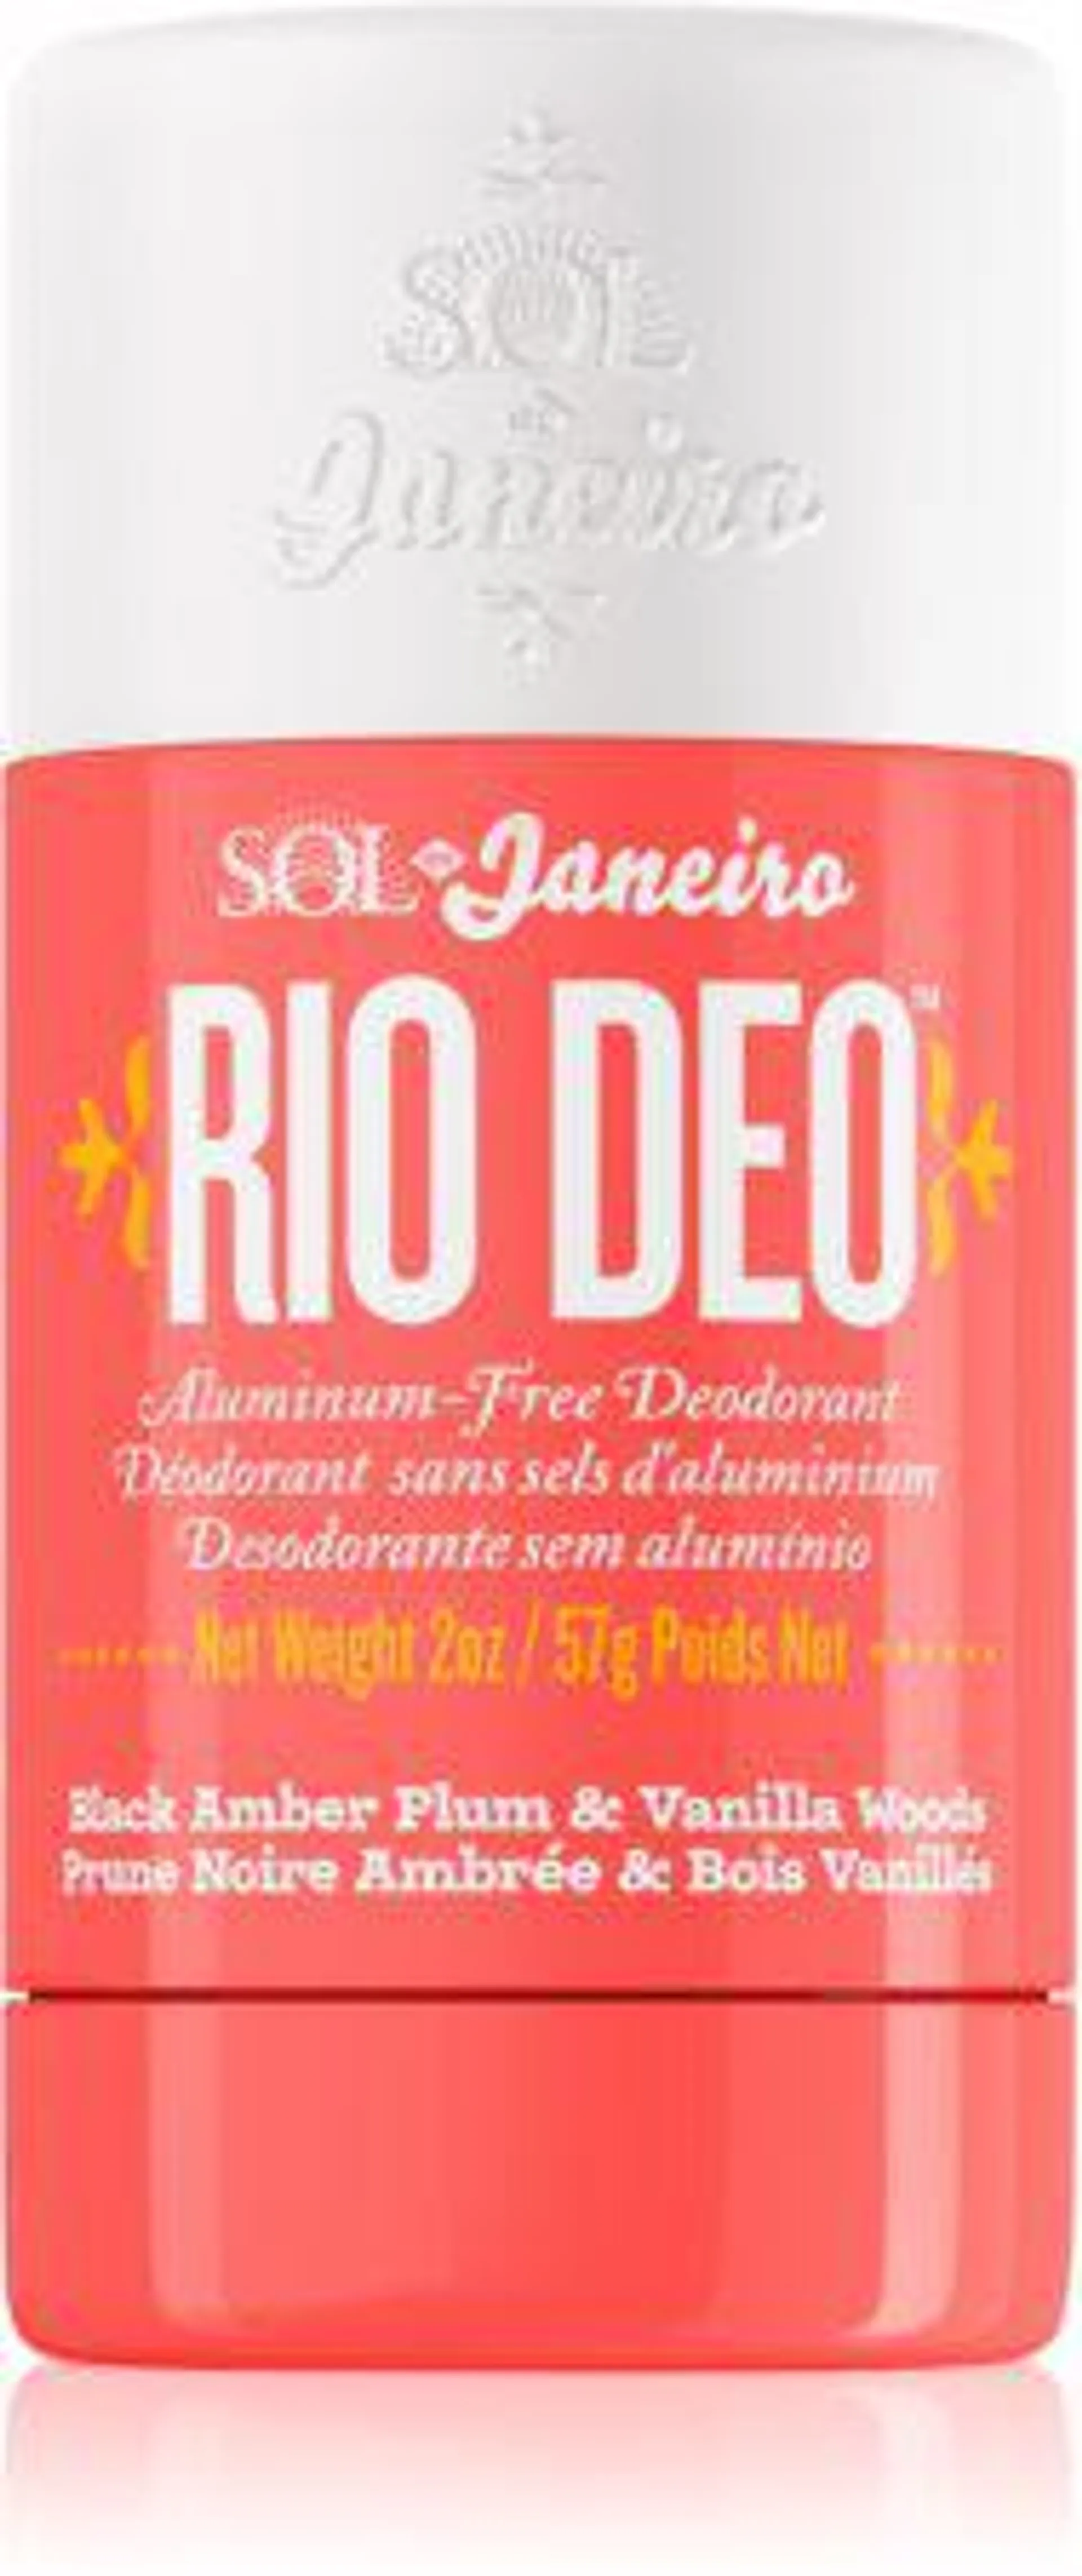 Rio Deo ’40